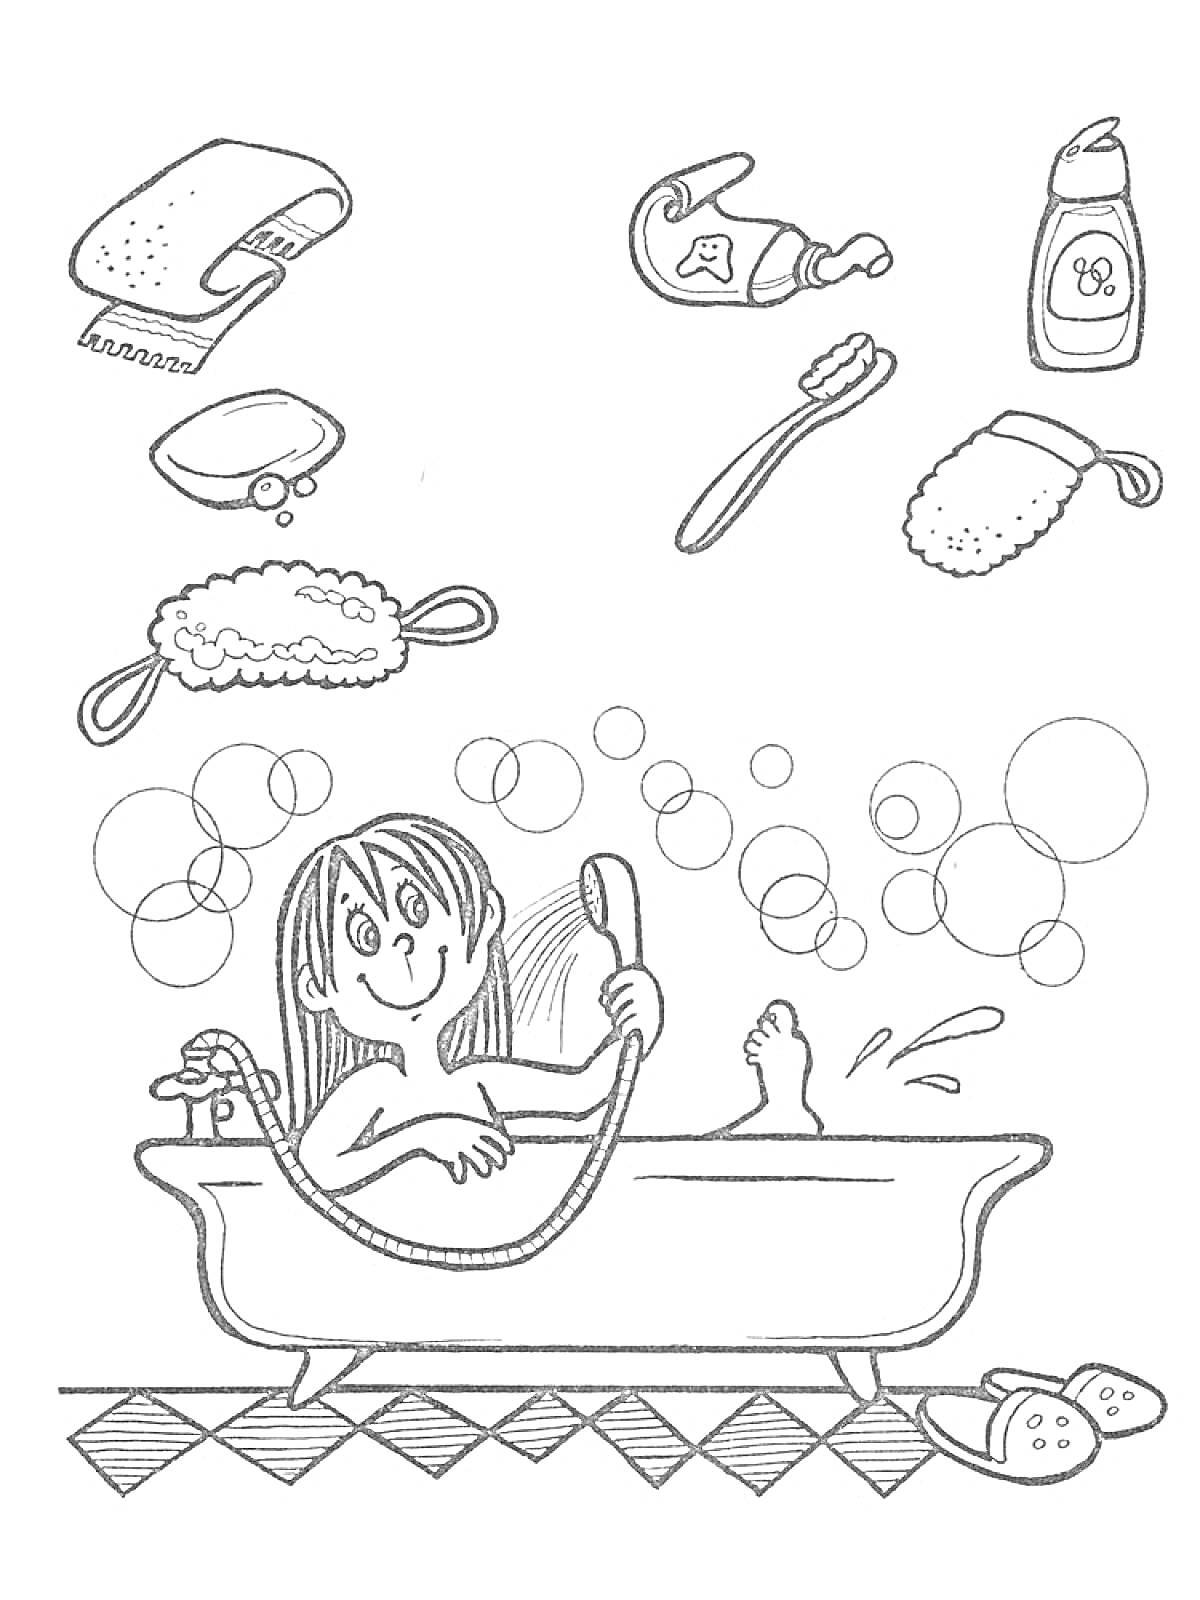 Раскраска Девочка в ванной с пеной, работающий душ, полотенце, мыло, мочалка, зубная щетка, зубная паста, гель для душа, тапки